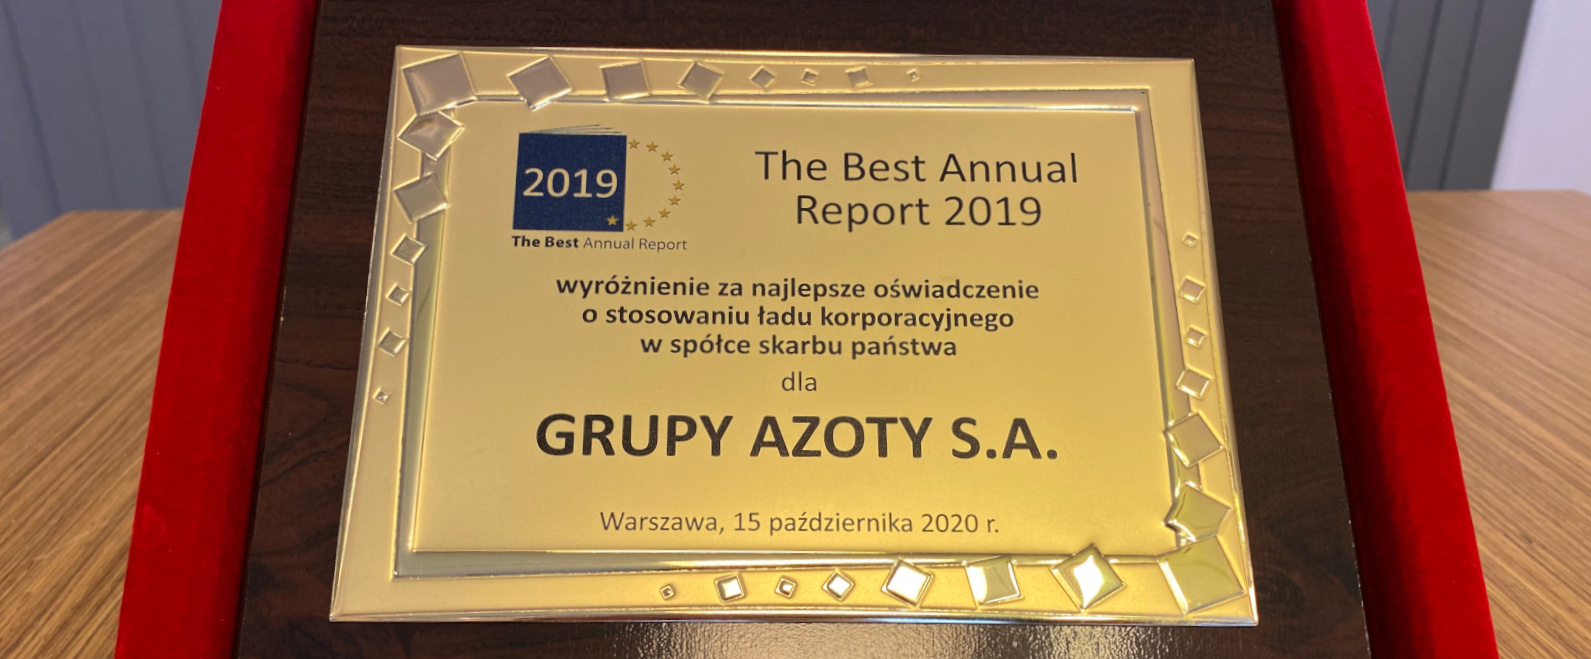 Grupa Azoty S.A. nagrodzona w konkursie „The Best Annual Report 2019”